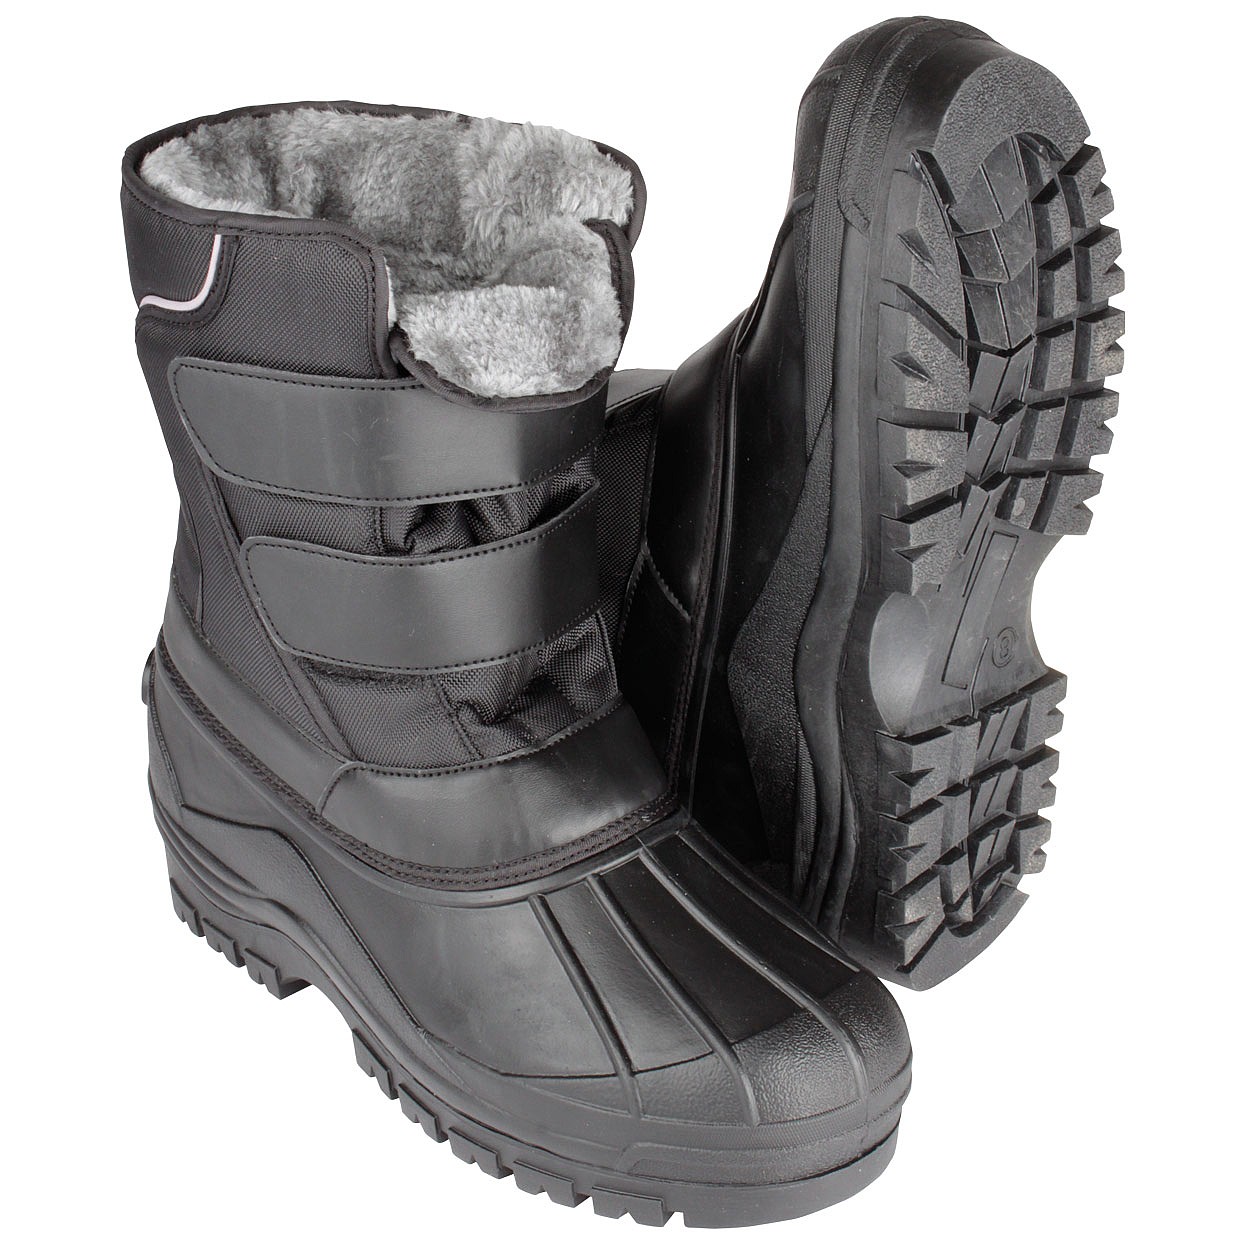 waterproof boots mens